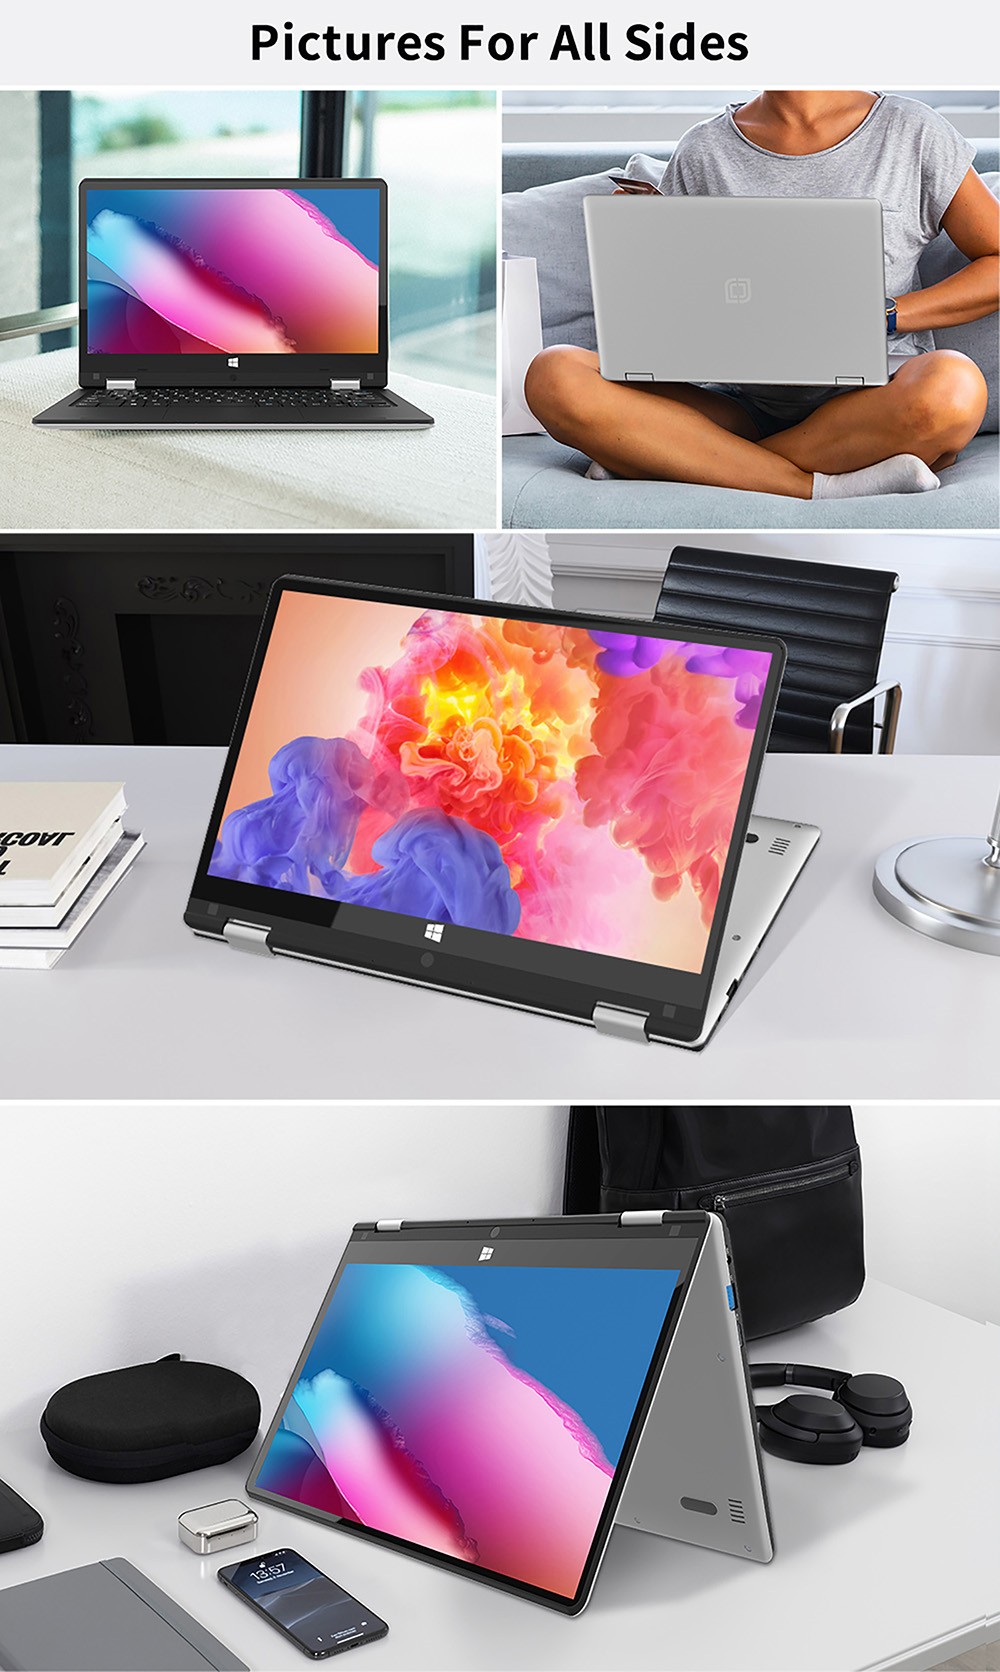 Jumper EZbook X1S 2 in 1 Tablet Intel Gemini Lake N4000 4GB LPDDR4 128GB eMMC 1366x768 Display Windows 10 - Grey